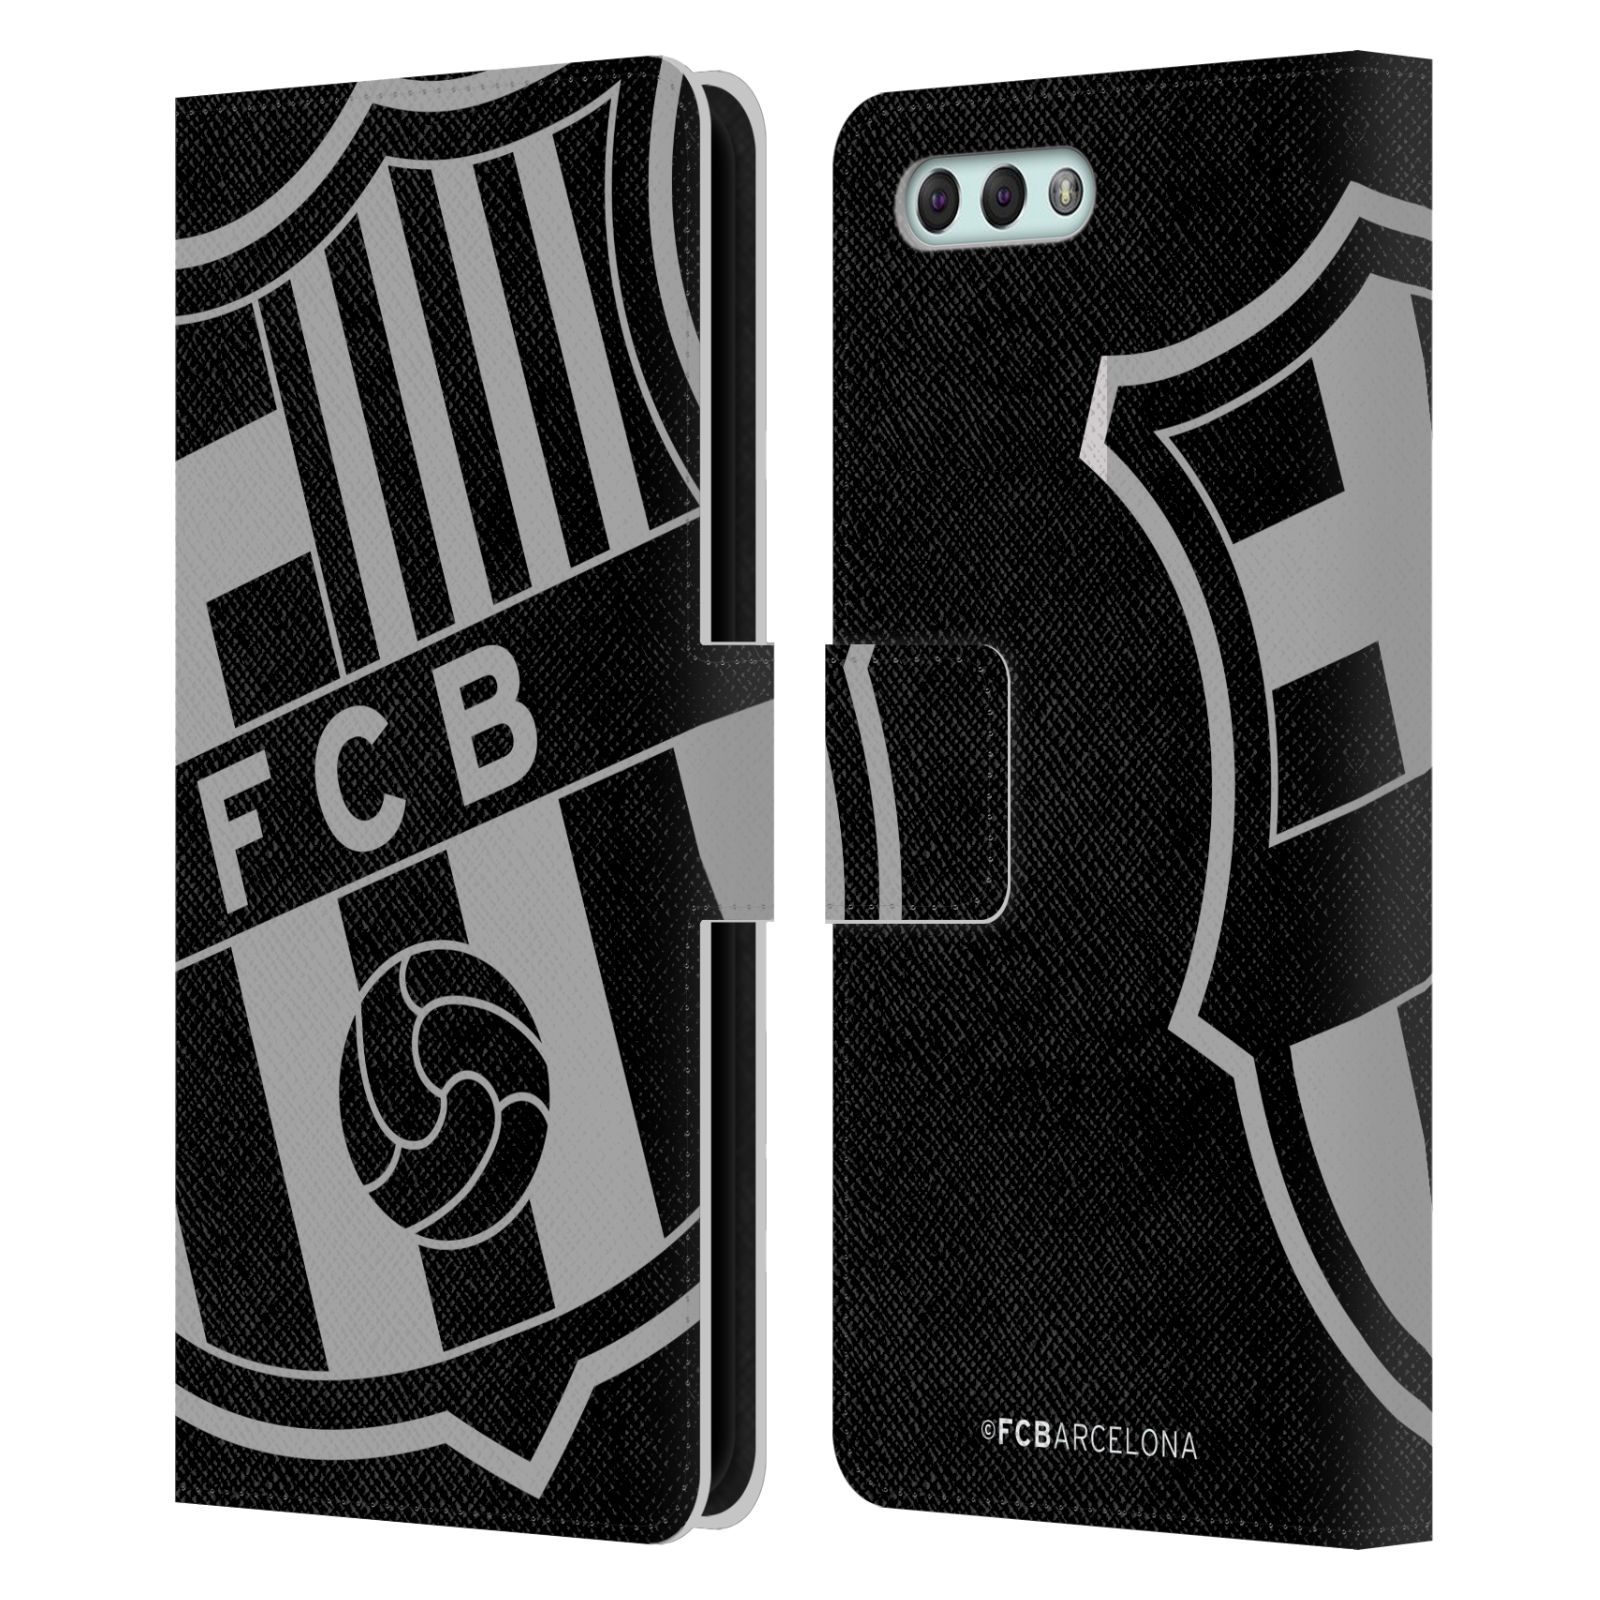 Pouzdro na mobil Asus Zenfone 4 ZE554KL  - HEAD CASE - FC Barcelona - černošedé logo